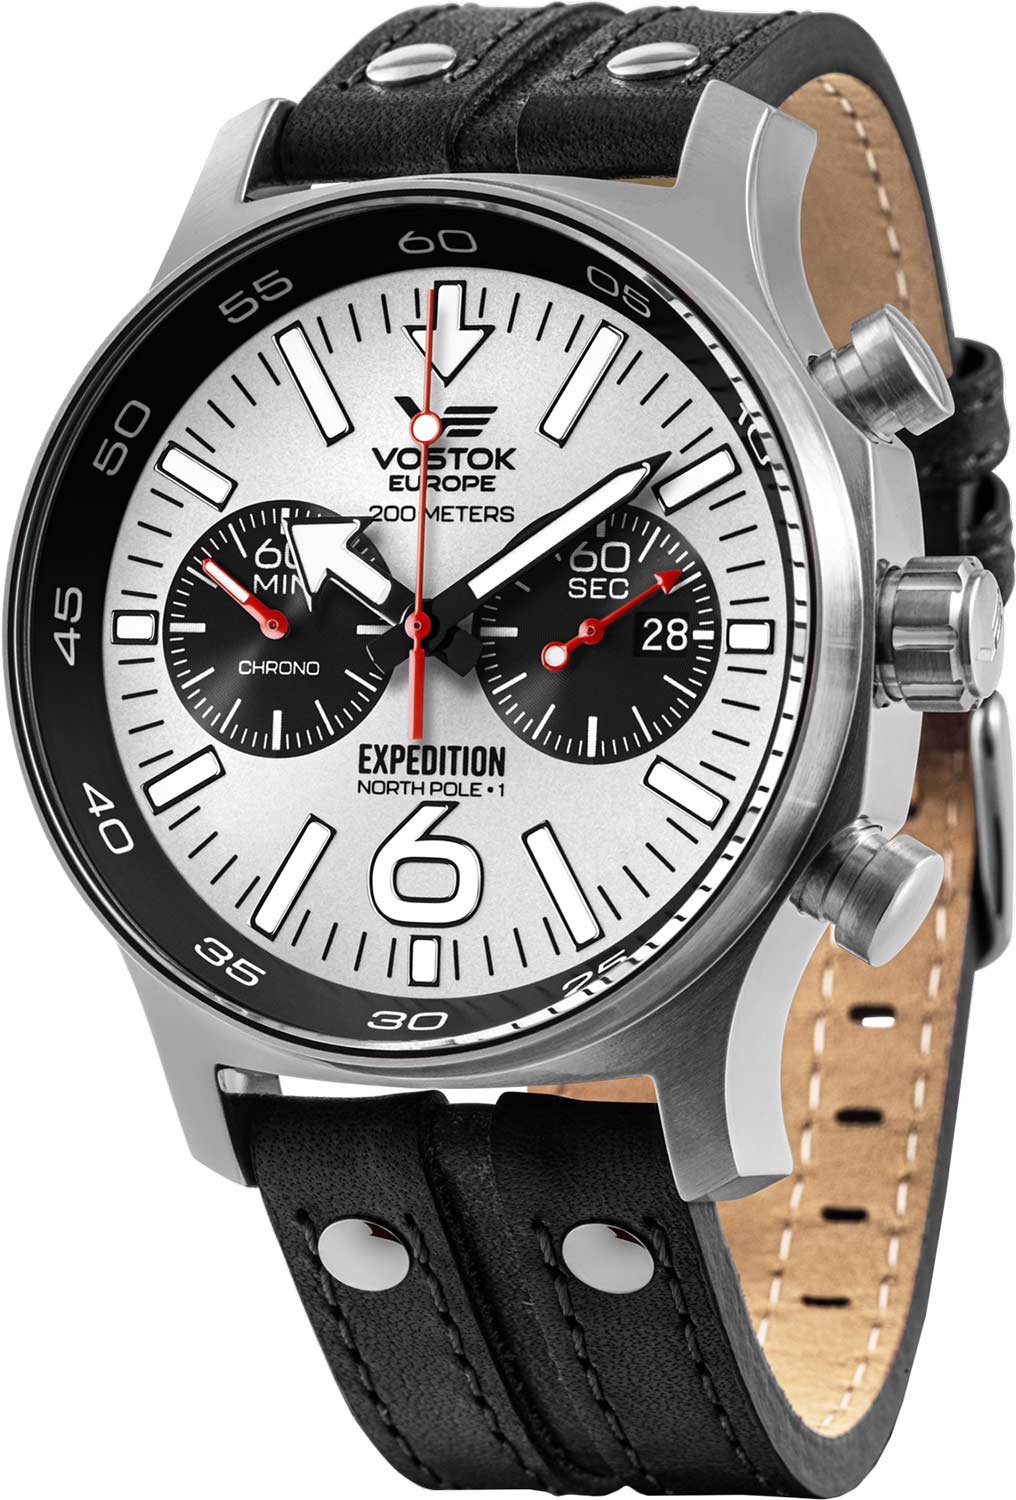 Наручные часы Vostok Europe 6S21/595A642 с хронографом